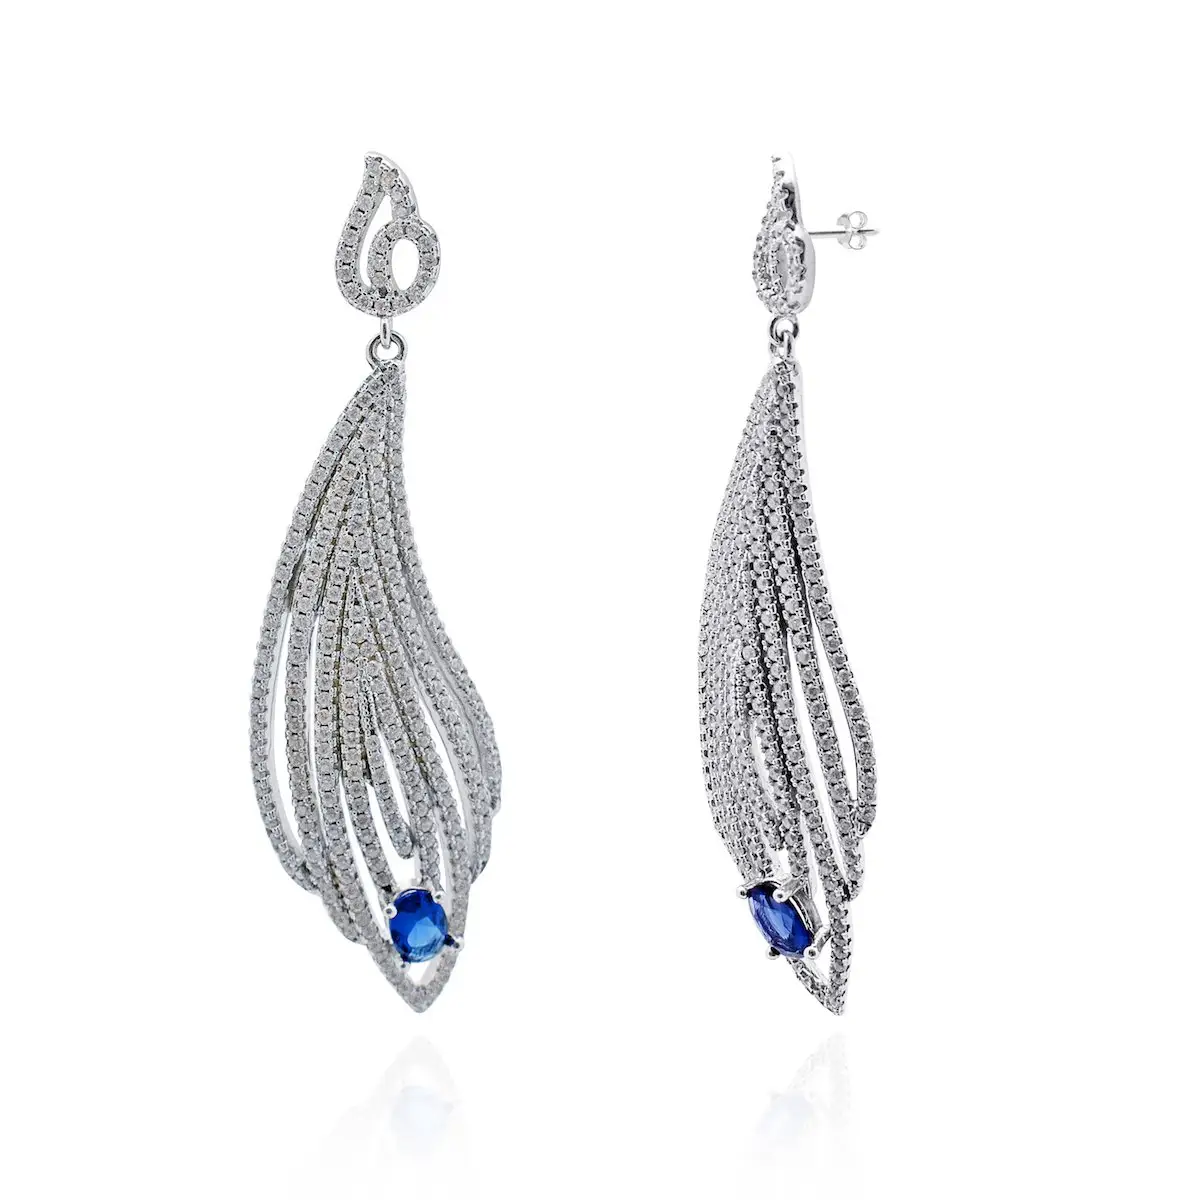 Avarta gioielli 925 argento Sterling Allure Set pendente con zaffiro blu e zirconi per ragazze e donne